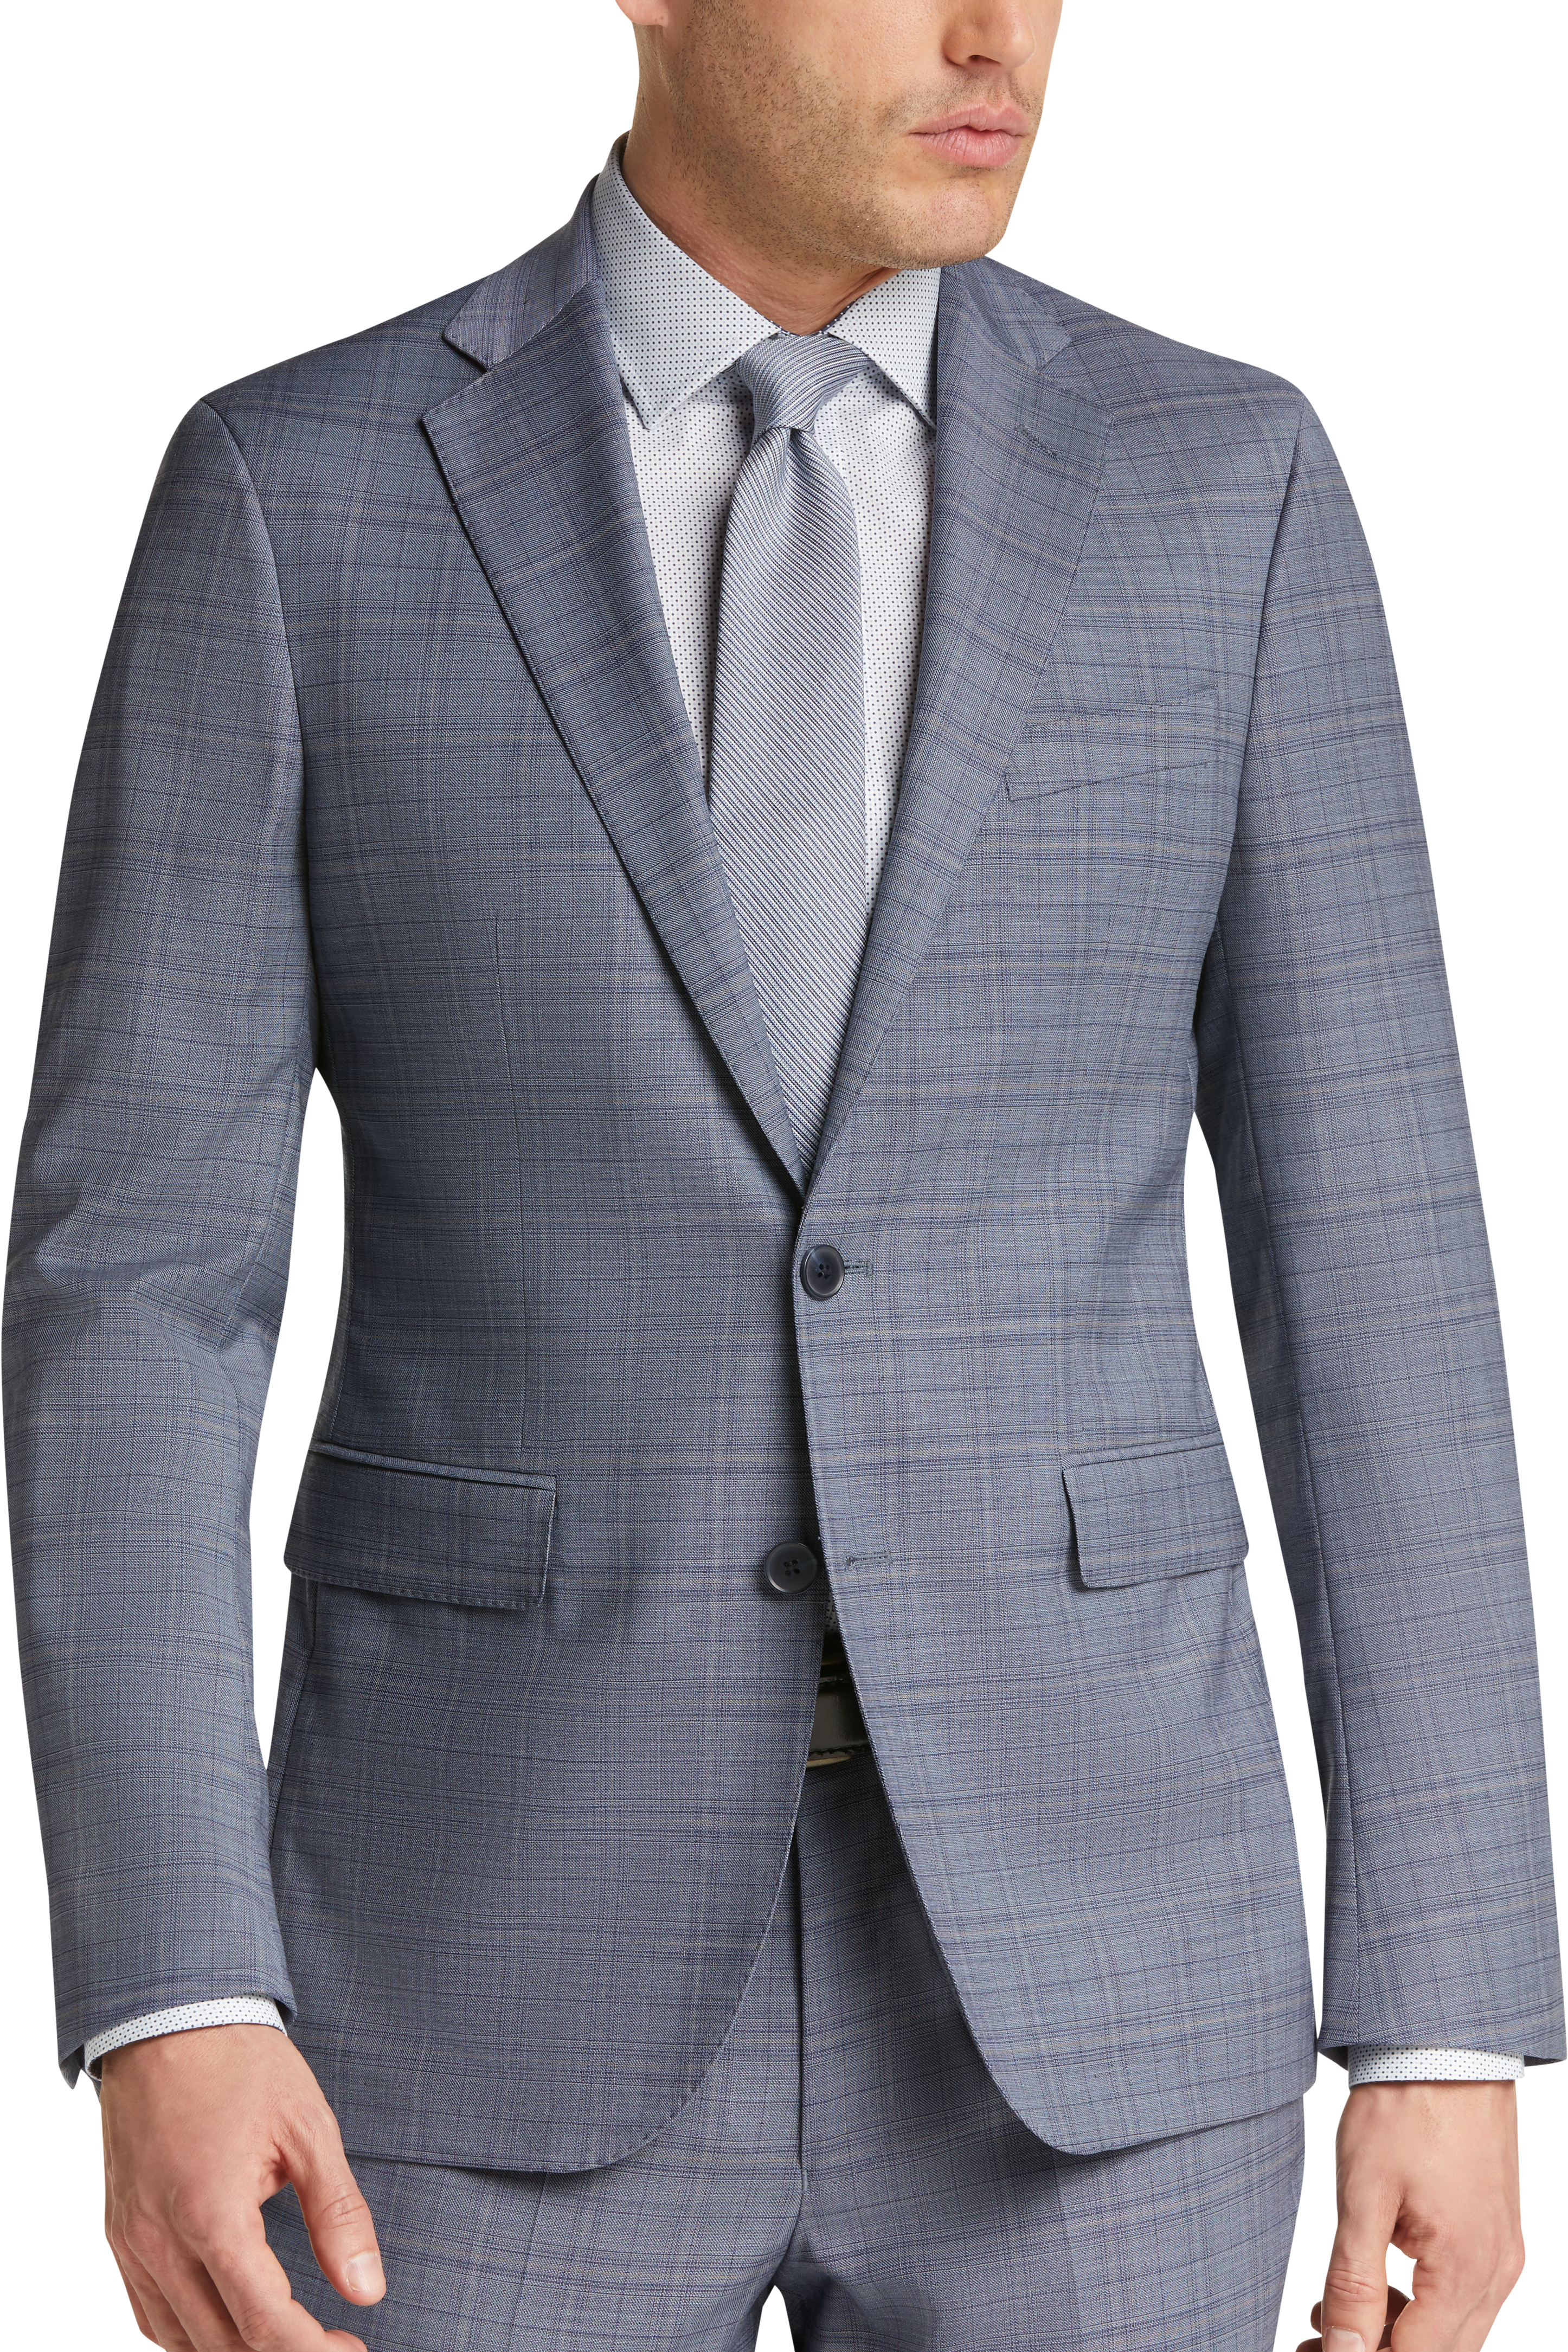 Cole Haan Grand.ØS Blue Plaid Coolmax Lined Slim Fit Suit - Men's Suits ...